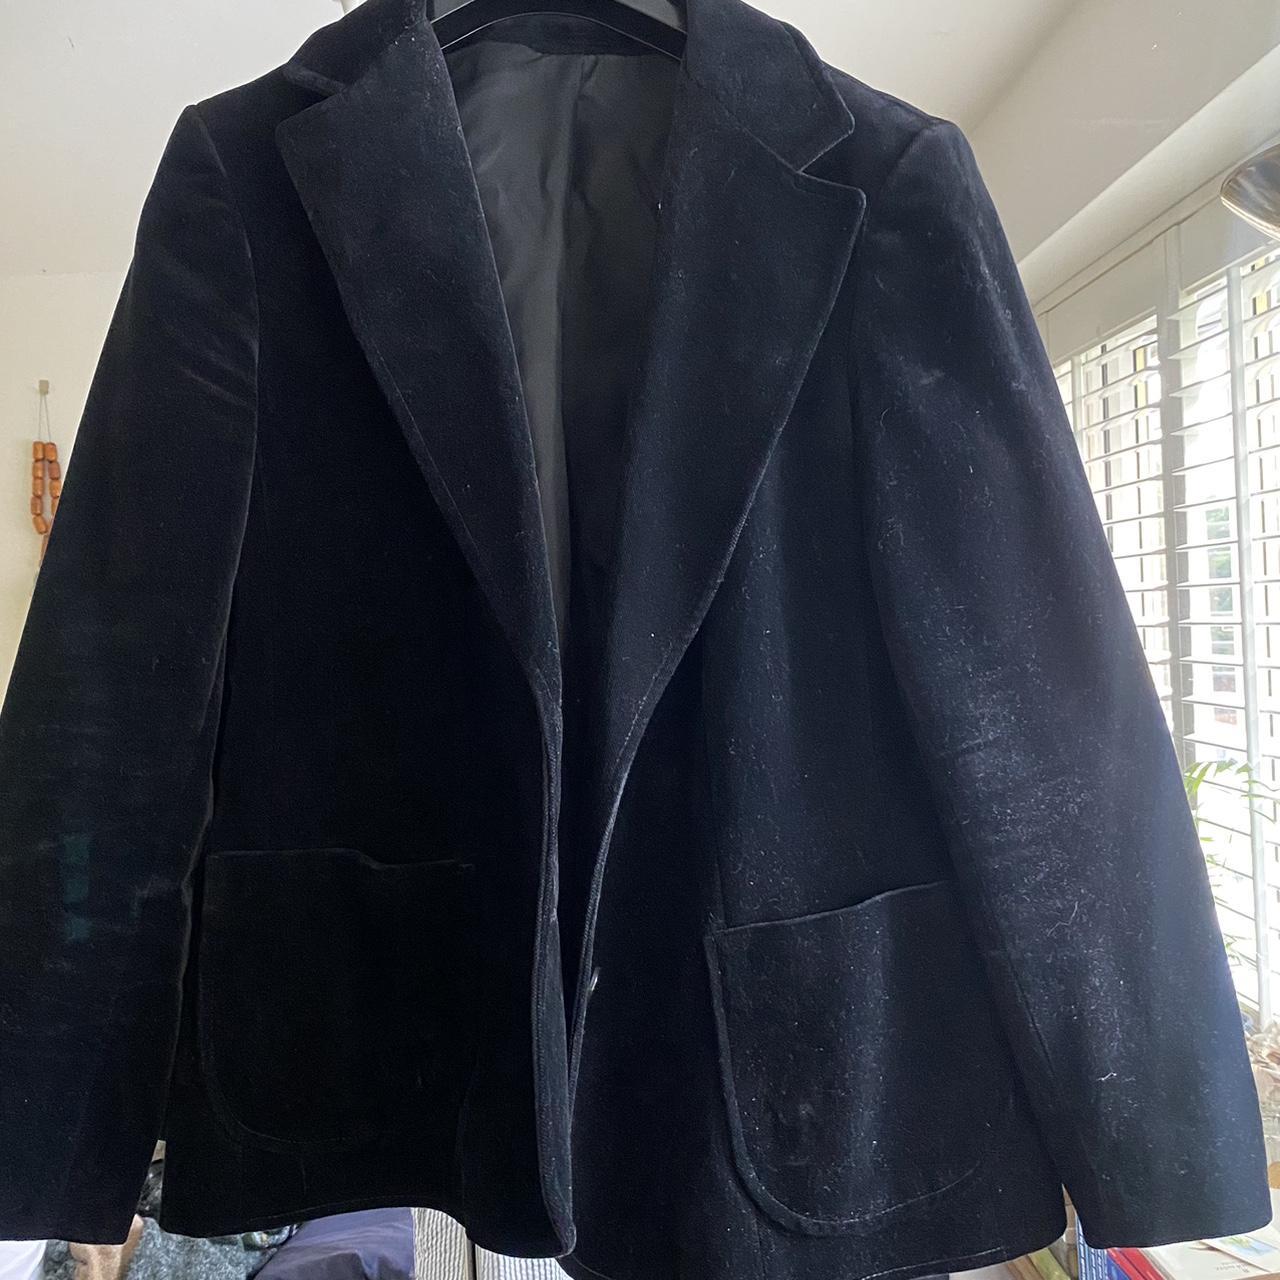 Vintage black velvet blazer Says UK16 but is... - Depop